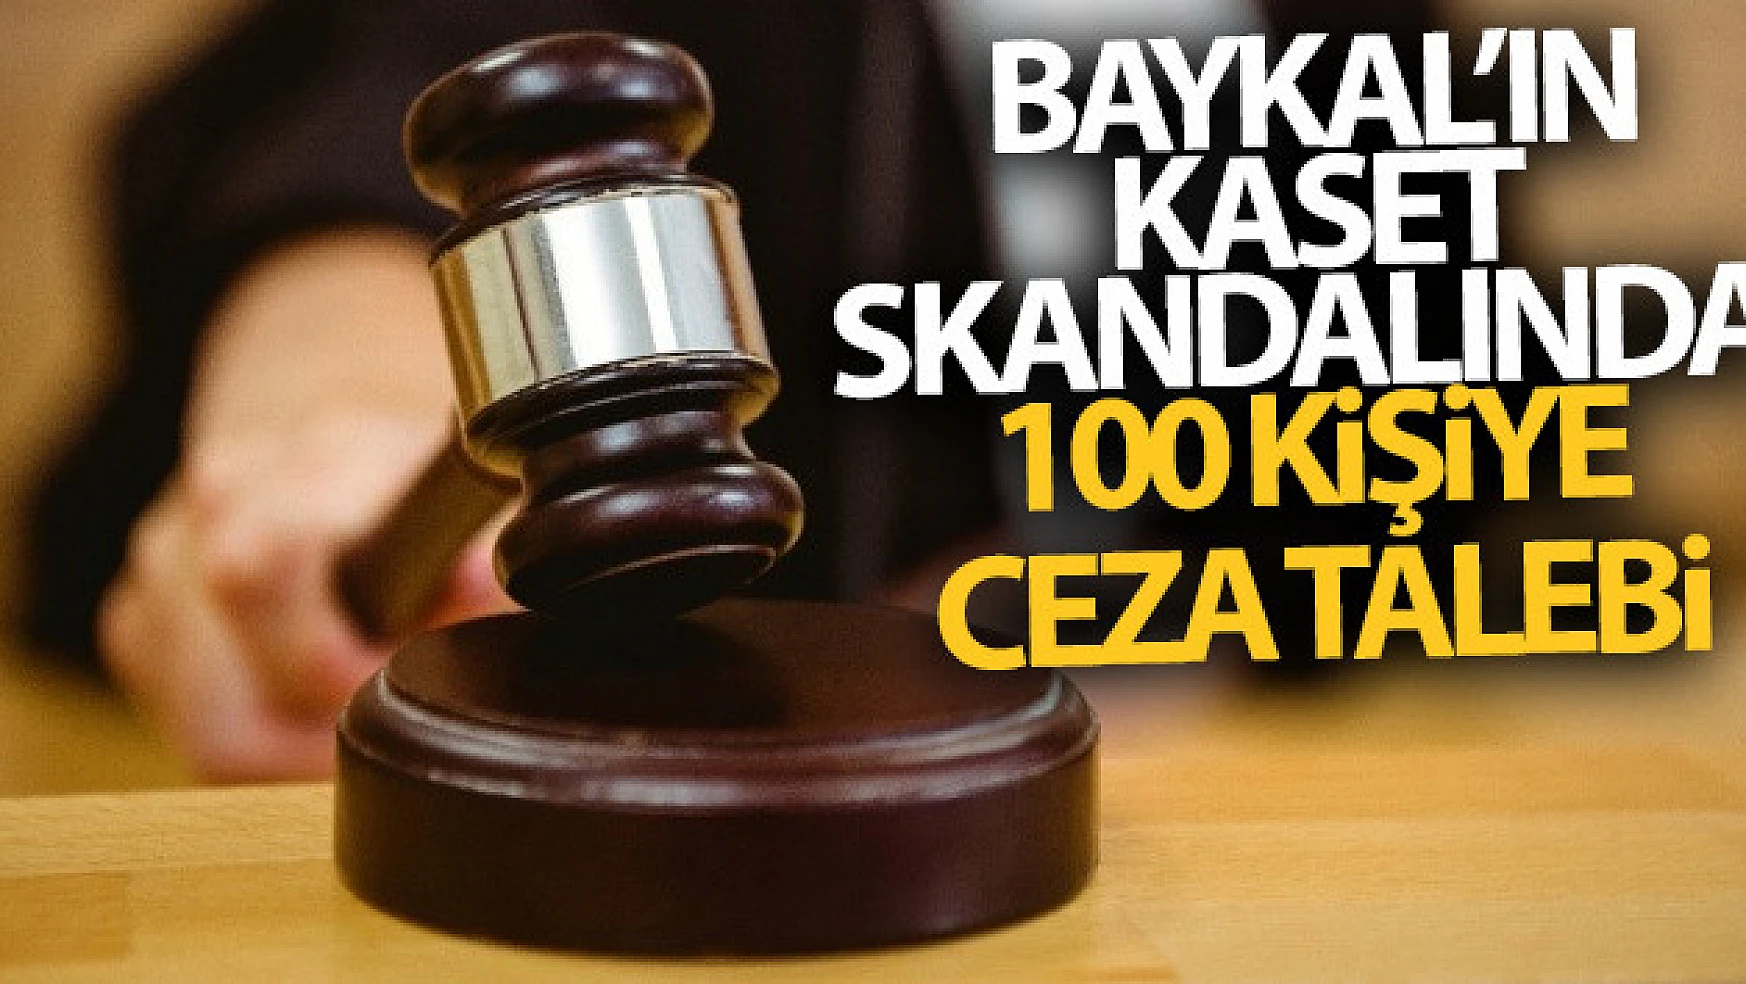 Baykal'ın kaset skandalında 100 kişiye ceza talebi